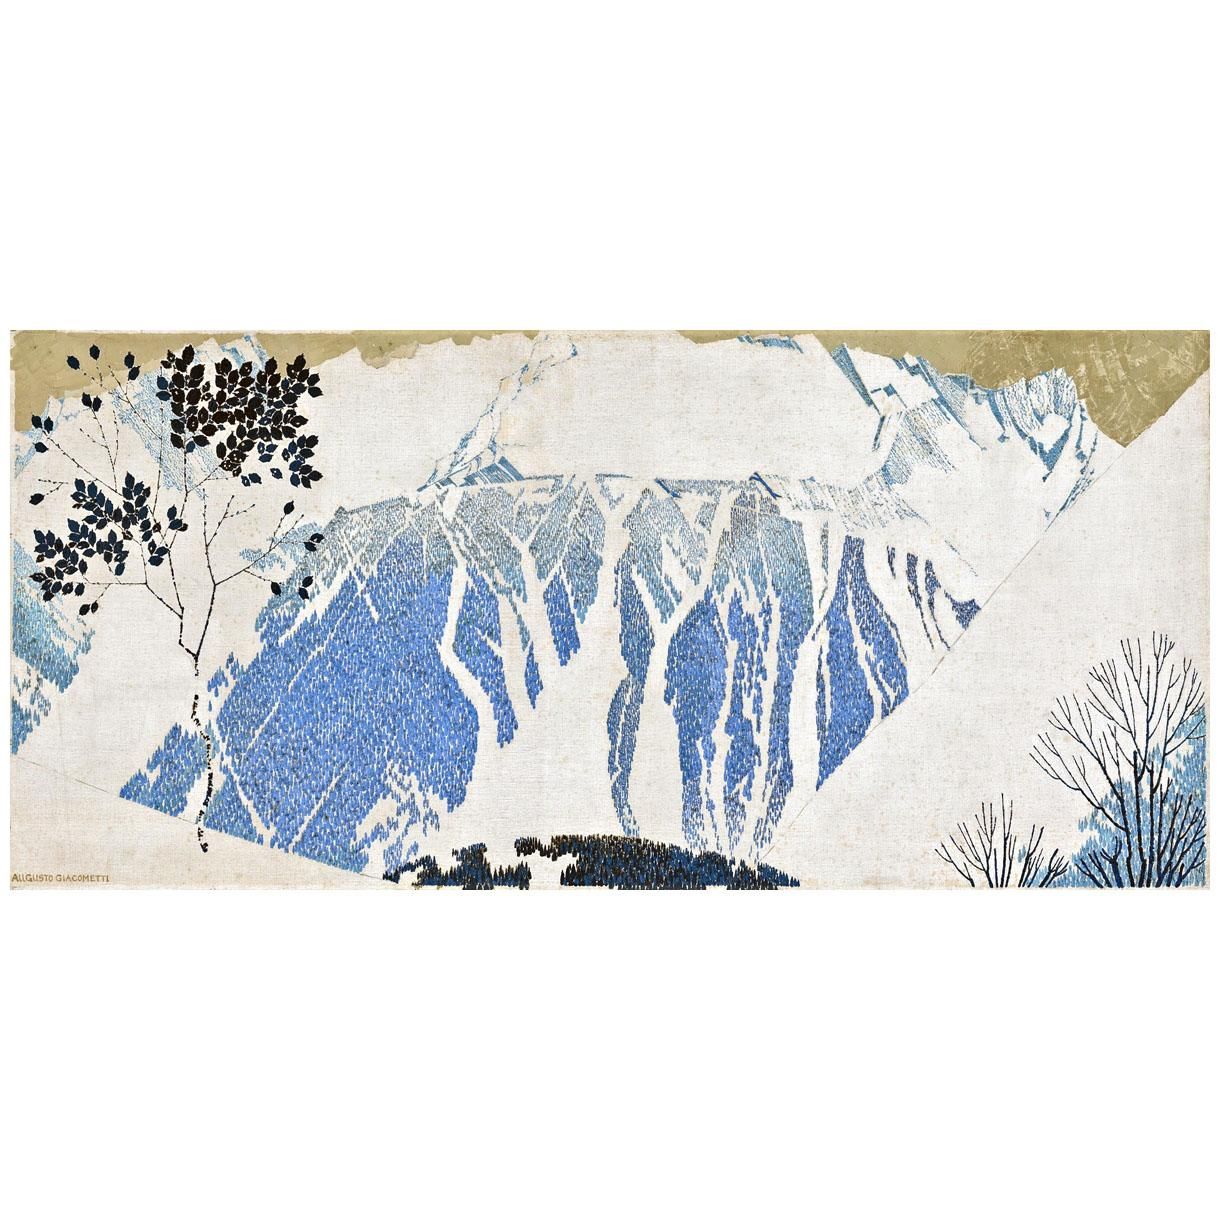 Augusto Giacometti. Mountains. 1904. Kunstmuseum Basel